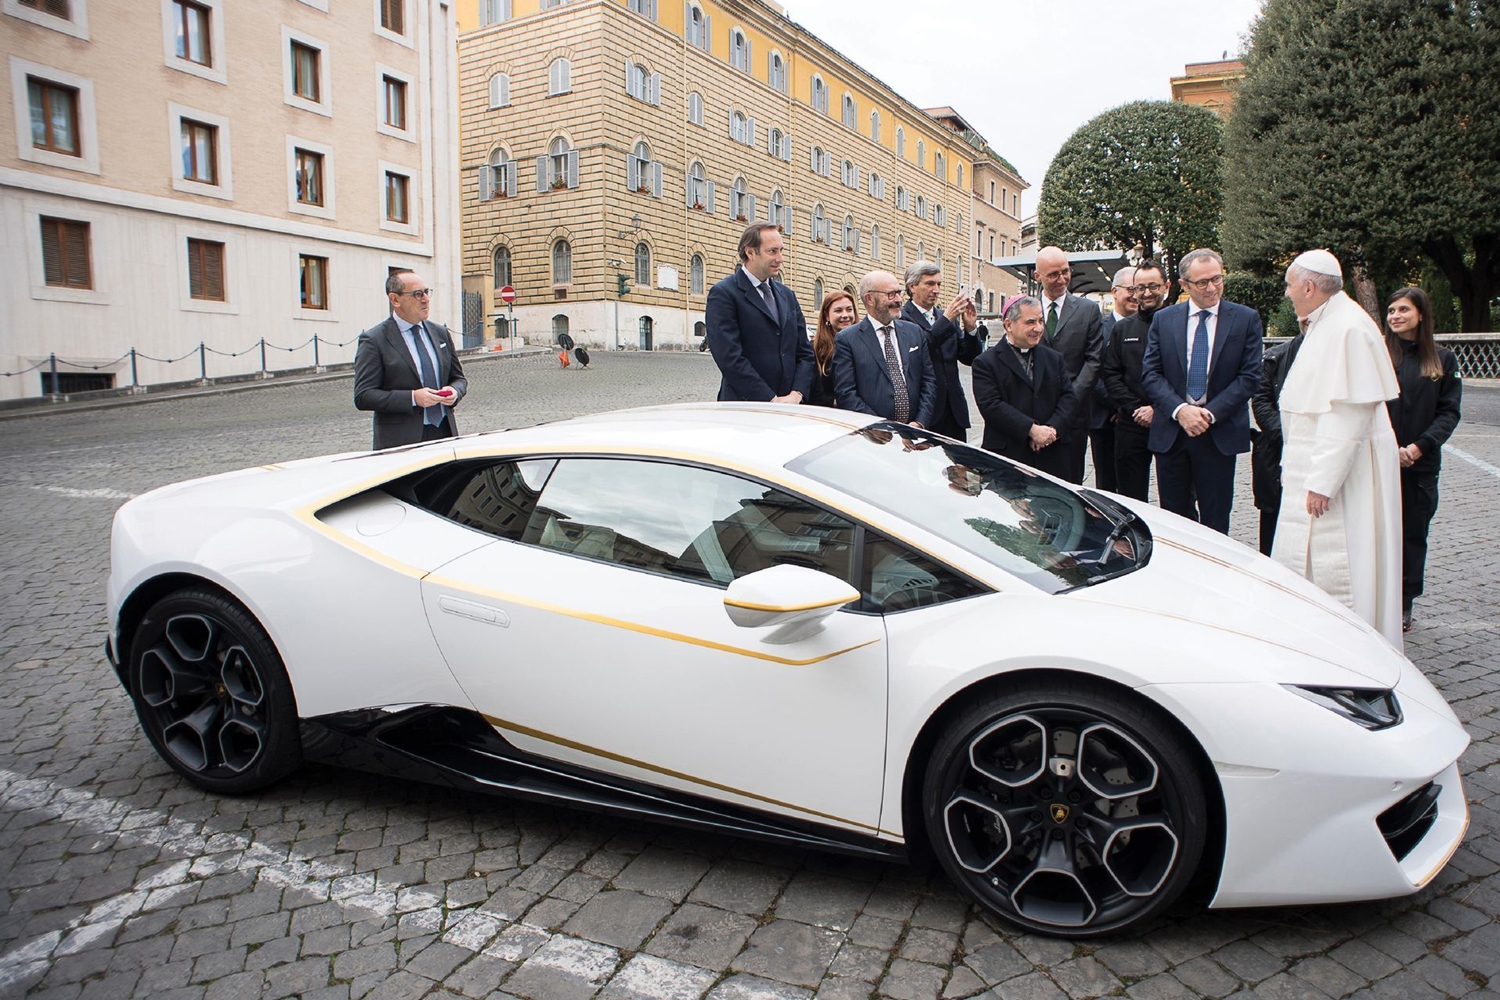 Már nem sokáig marad a pápáé ez a gyönyörű Lamborghini 13